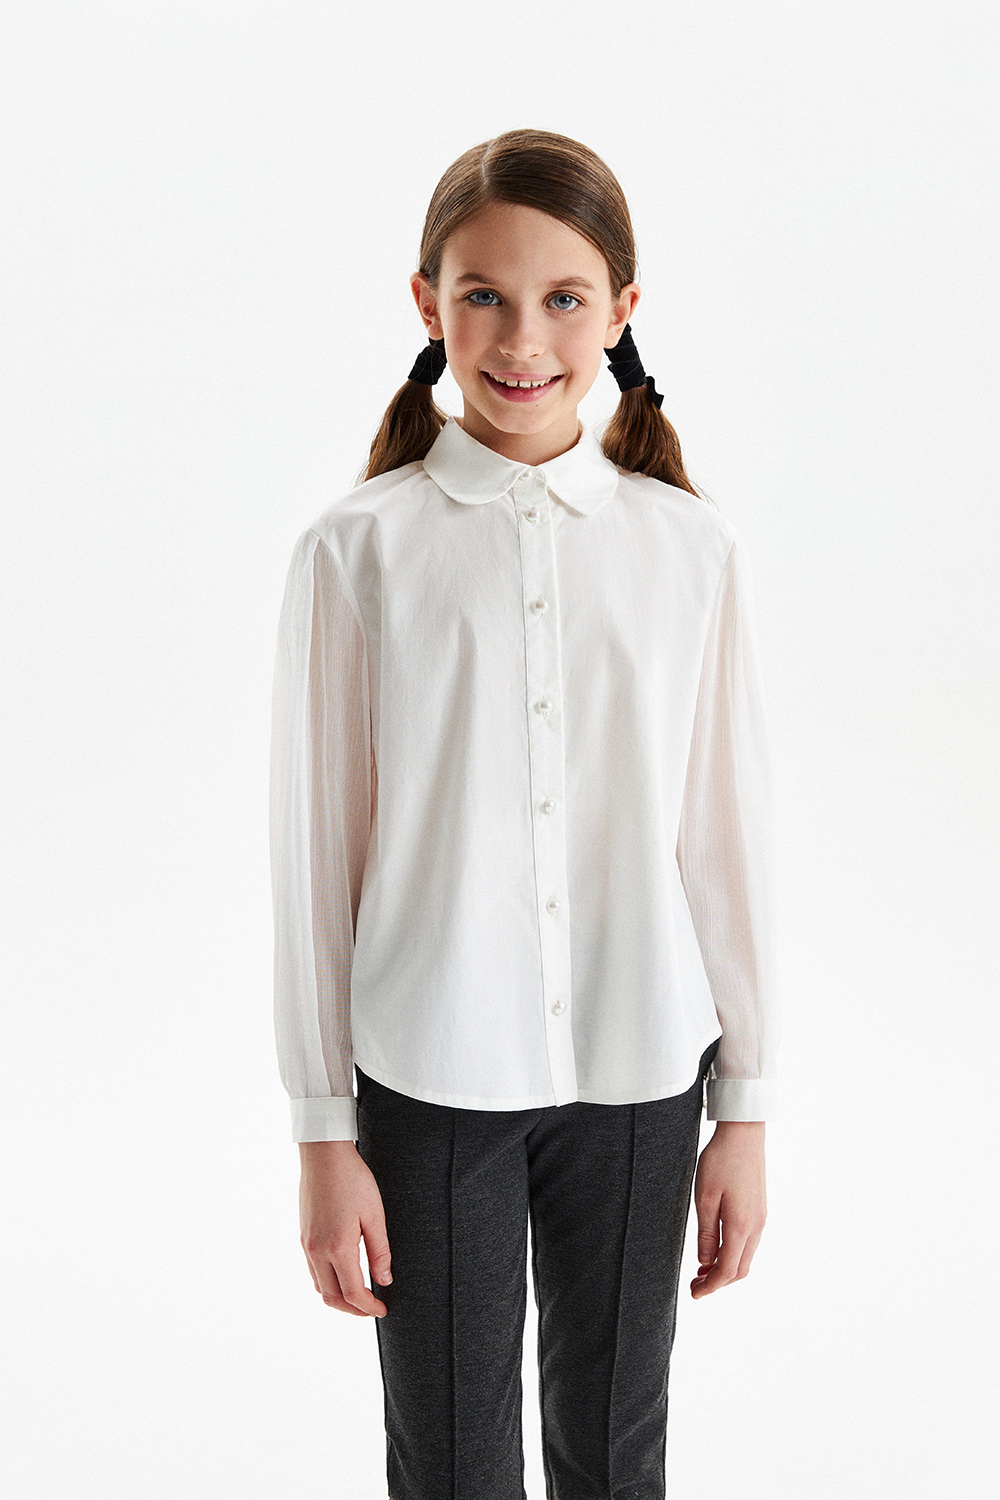 Хлопковая блузка с полупрозрачными рукавами (SSFSG-329-23021-241) Silver Spoon